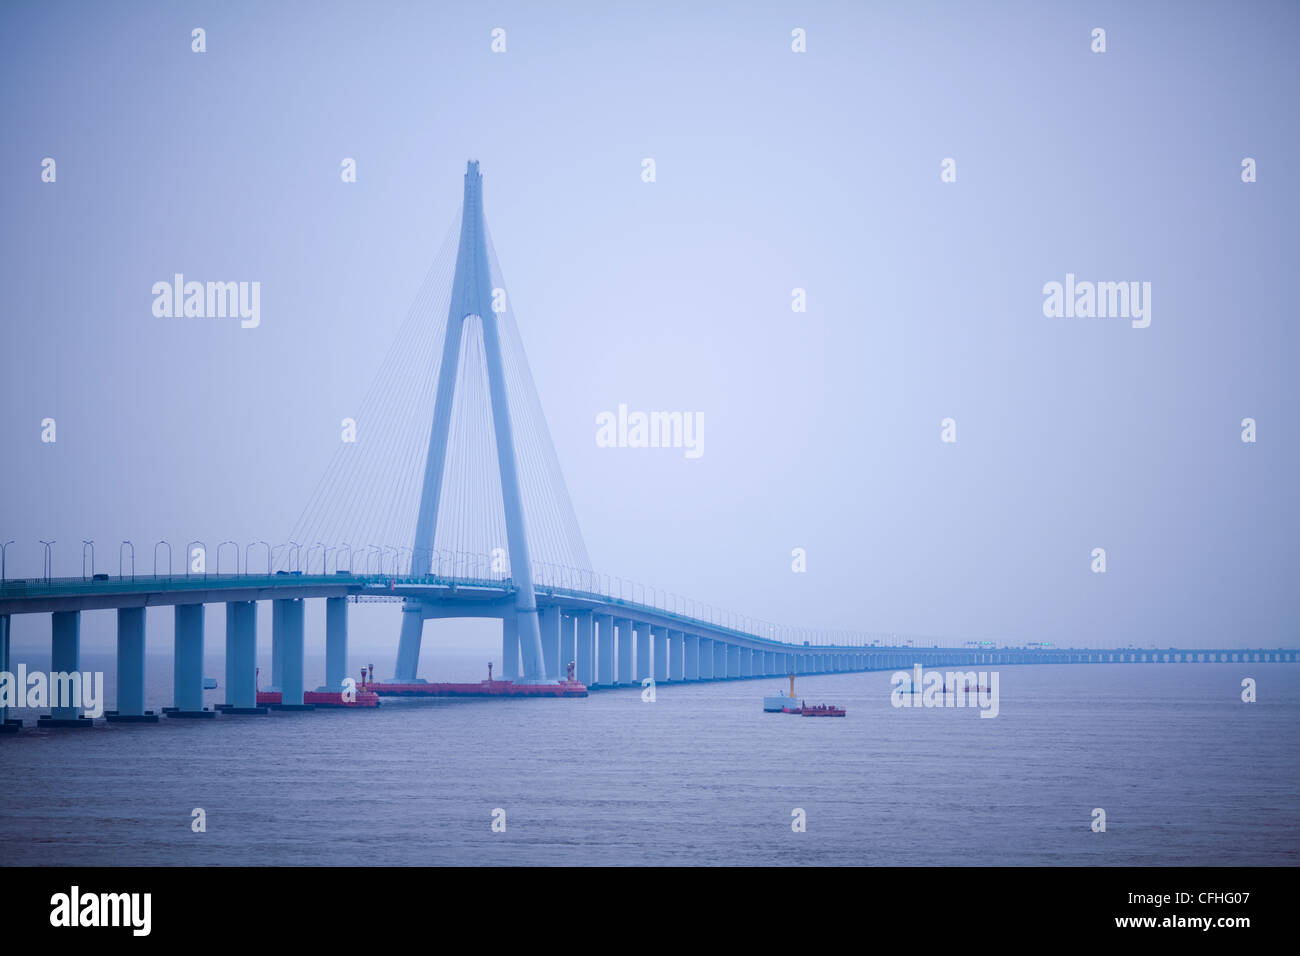 Hangzhou bridge in China Stock Photo